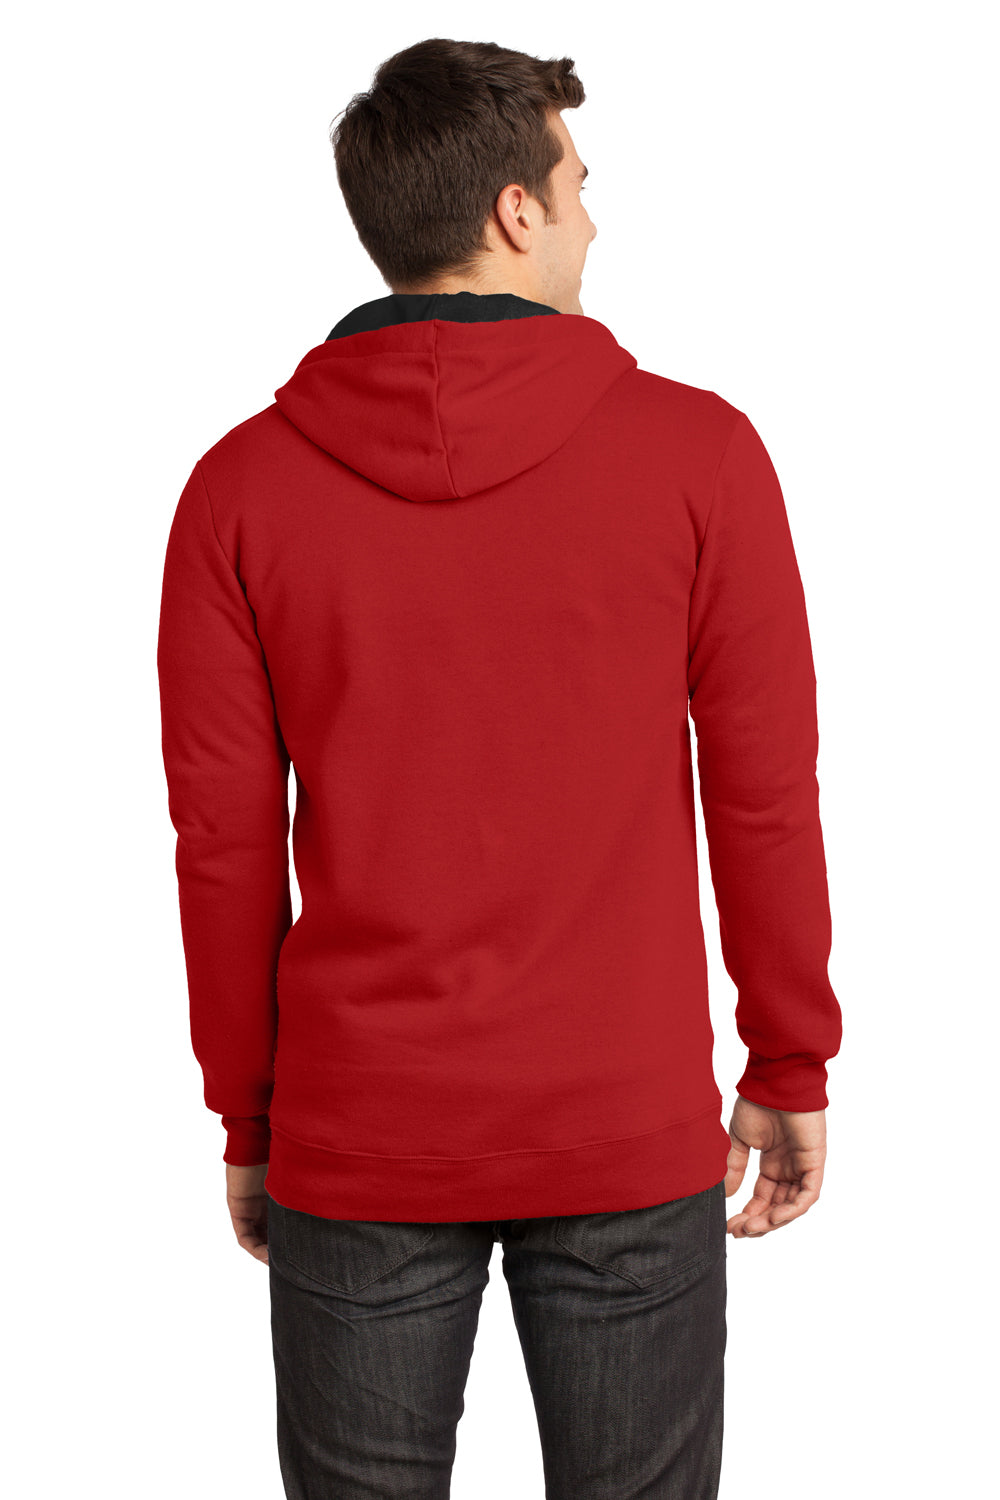 District DT800 Mens The Concert Fleece Full Zip Hooded Sweatshirt Hoodie Red Back